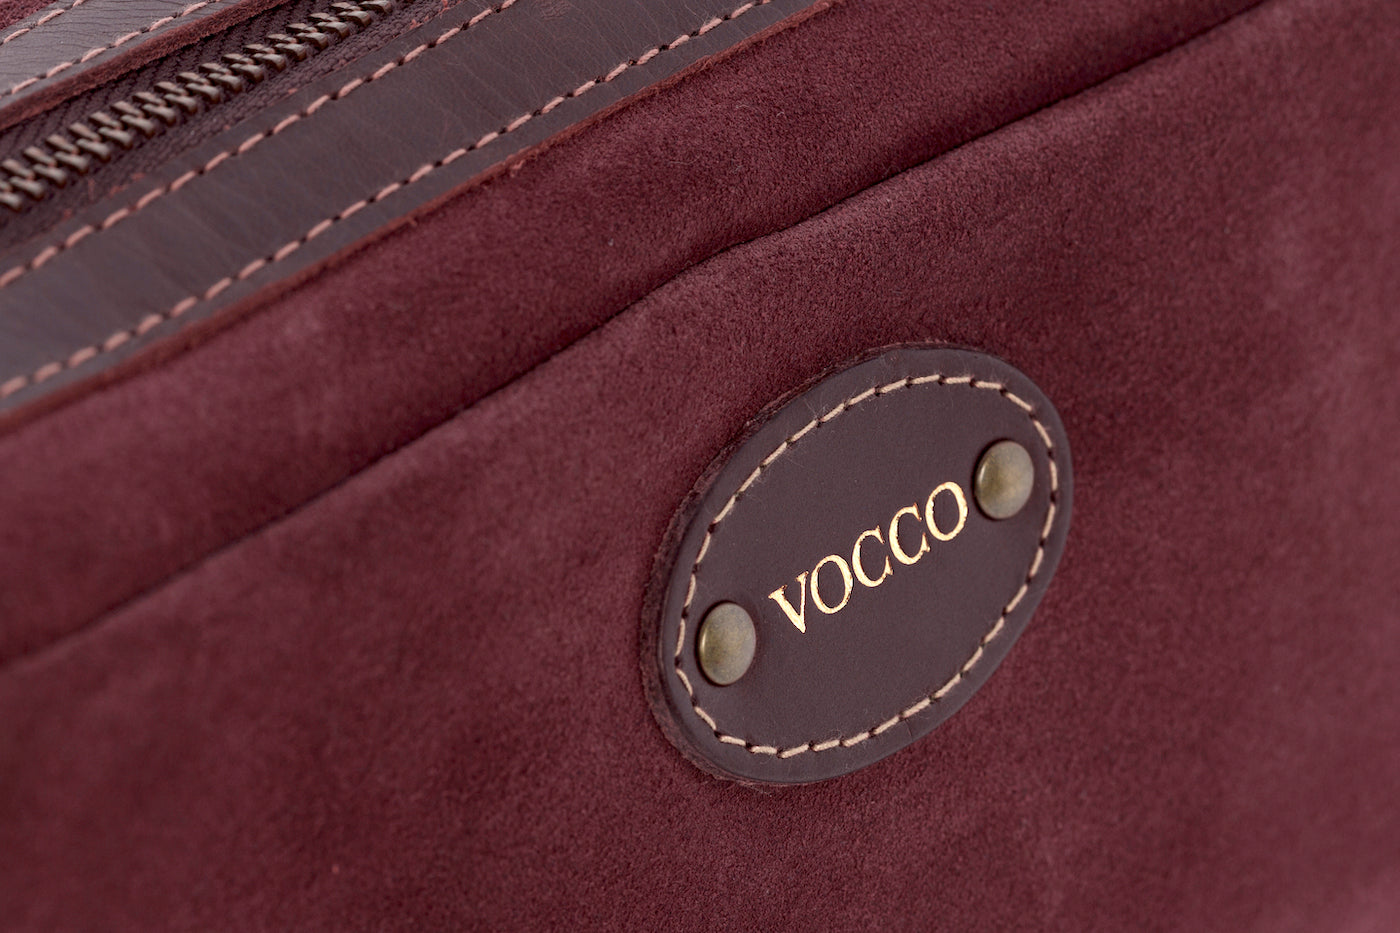 Vocco Terracotta Leather Toiletry Case - Vocco